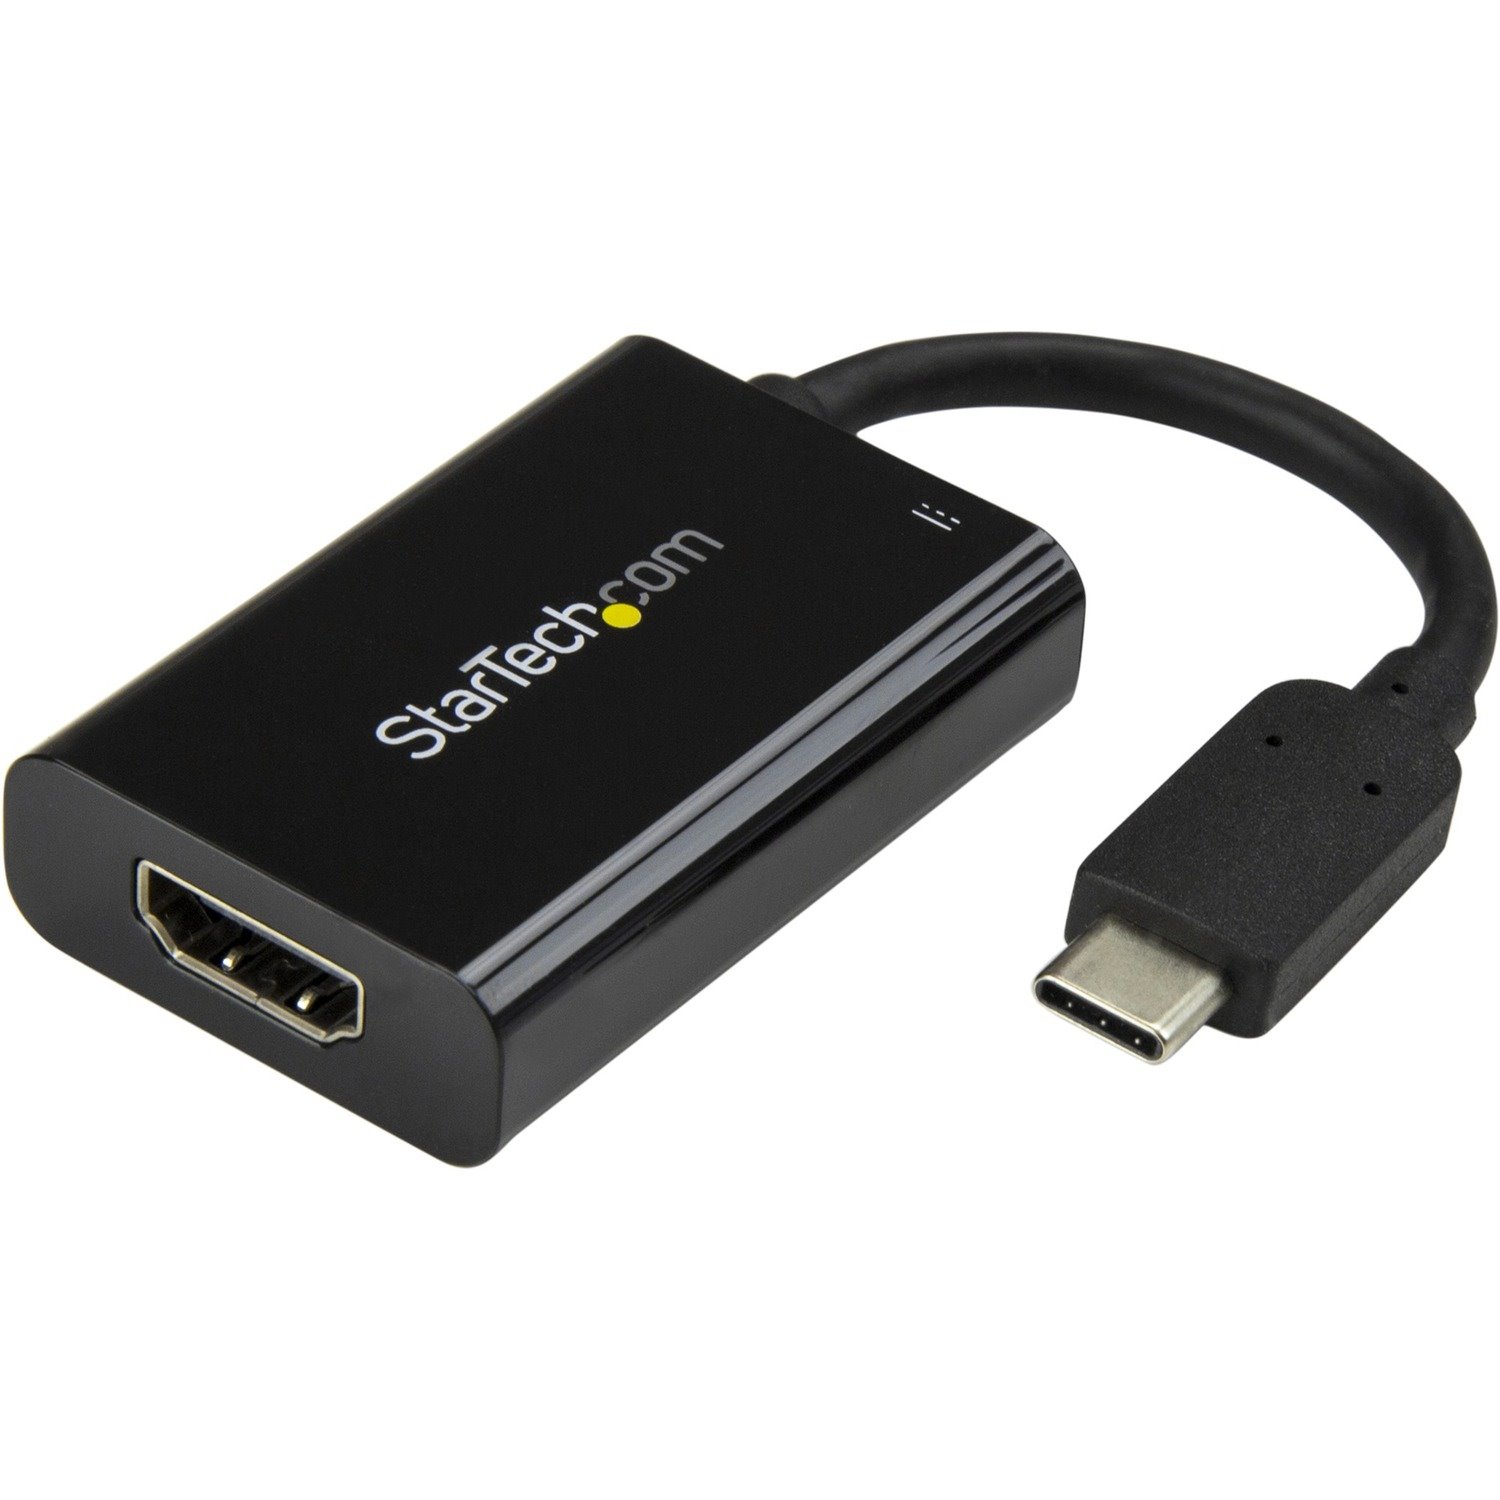 StarTech.com A/V Adapter - 1 Pack